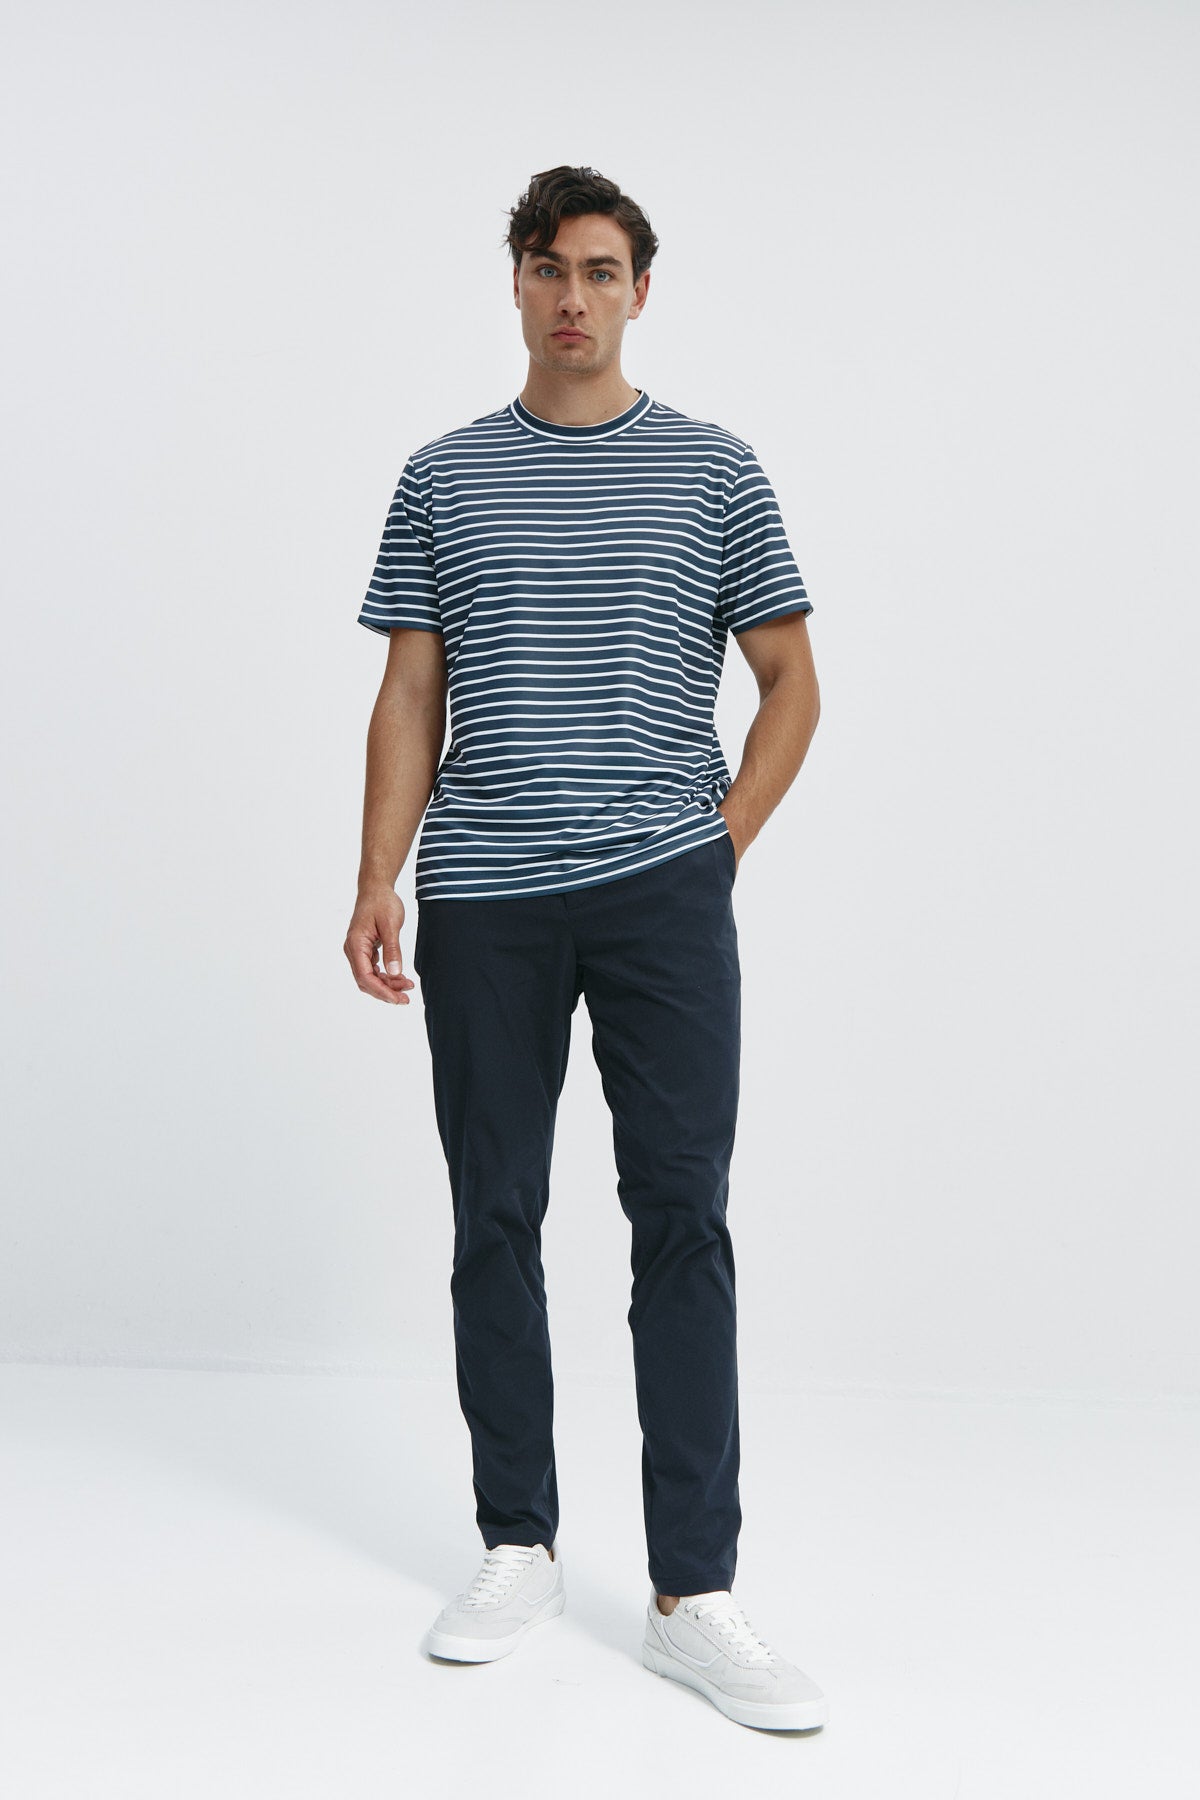 Camiseta de hombre con rayas negras de Sepiia, estilo y versatilidad en una prenda resistente. Foto cuerpo entero